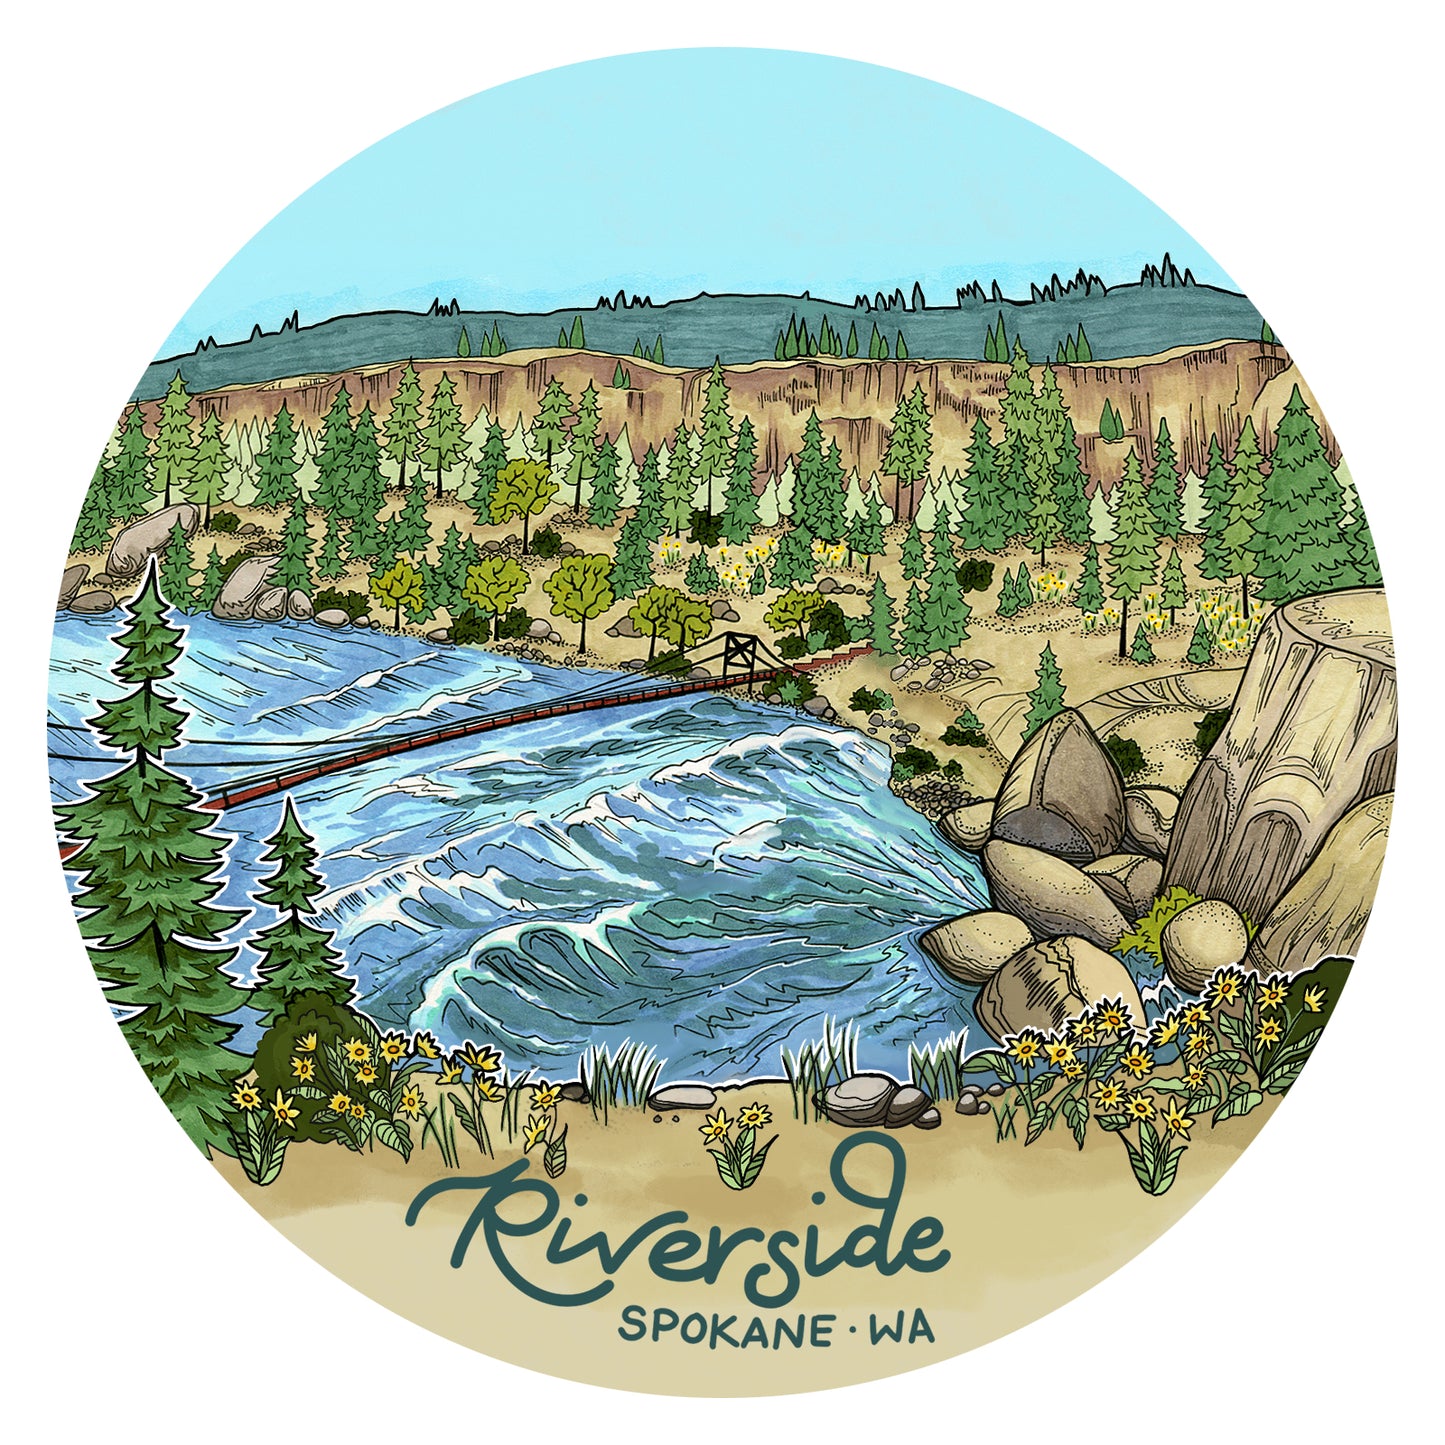 Riverside Spokane sticker